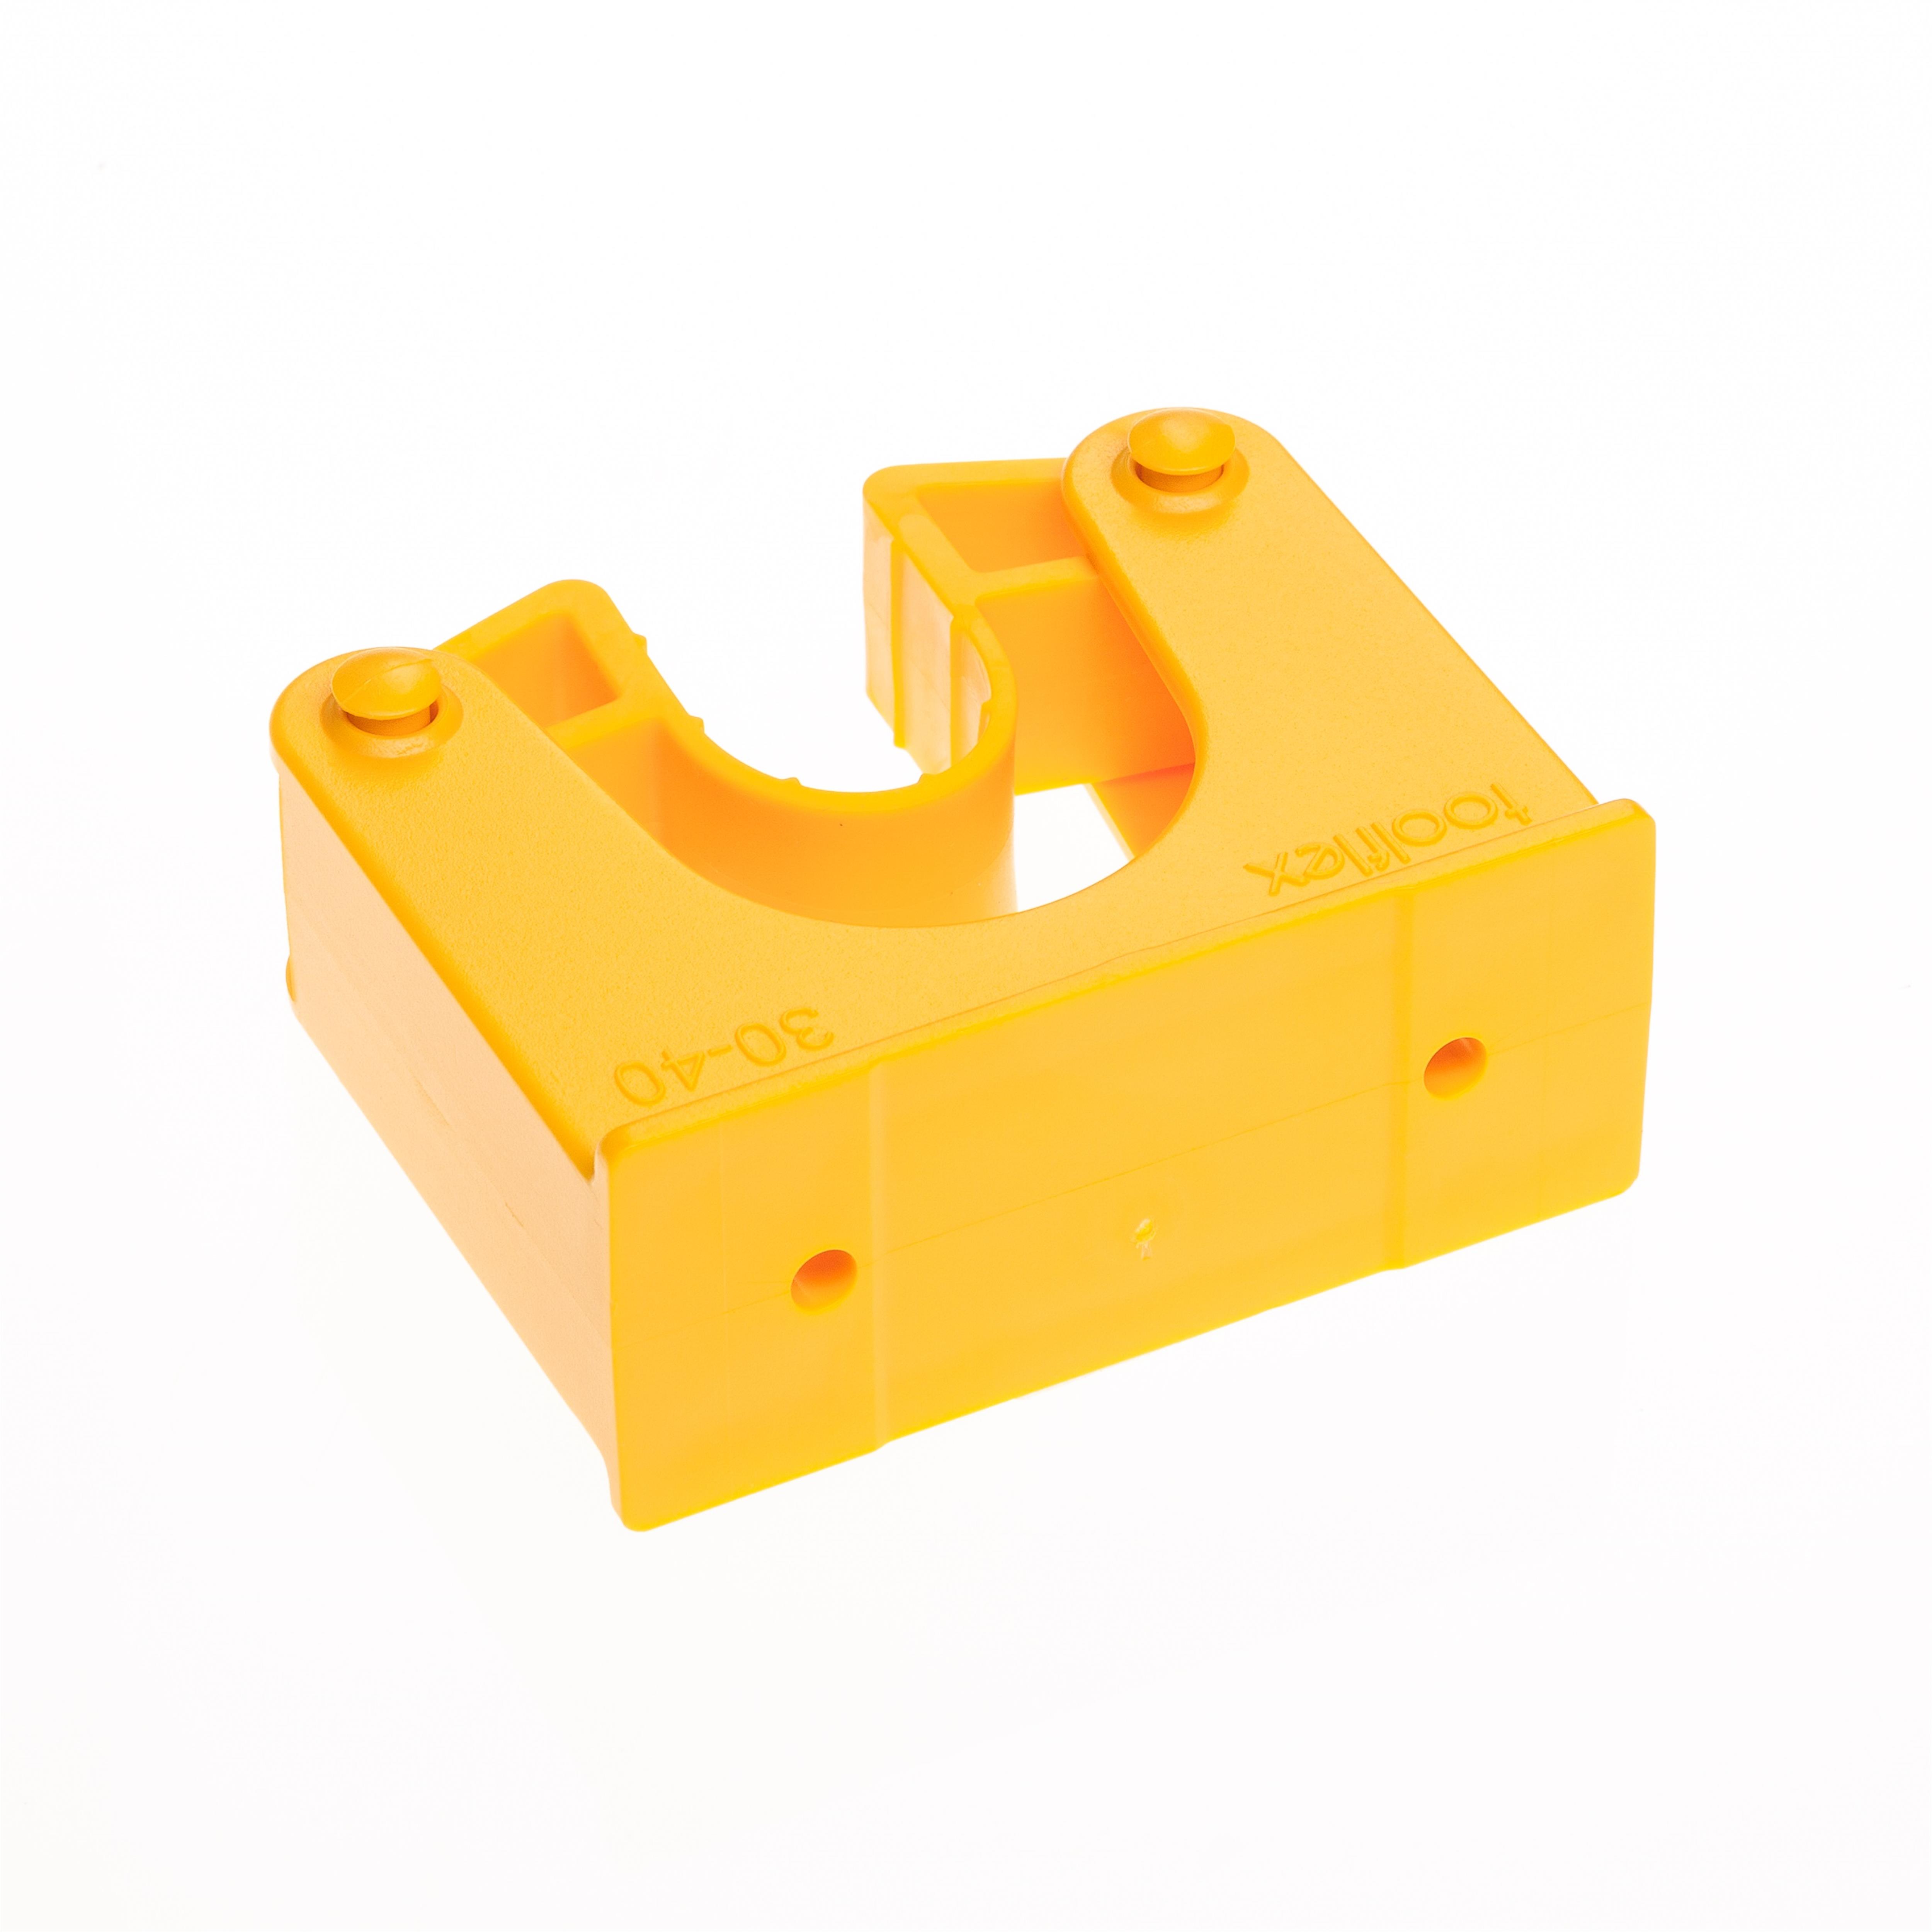 Toolflex Halterung 30-40 mm für Alu-Schiene einfarbig gelb